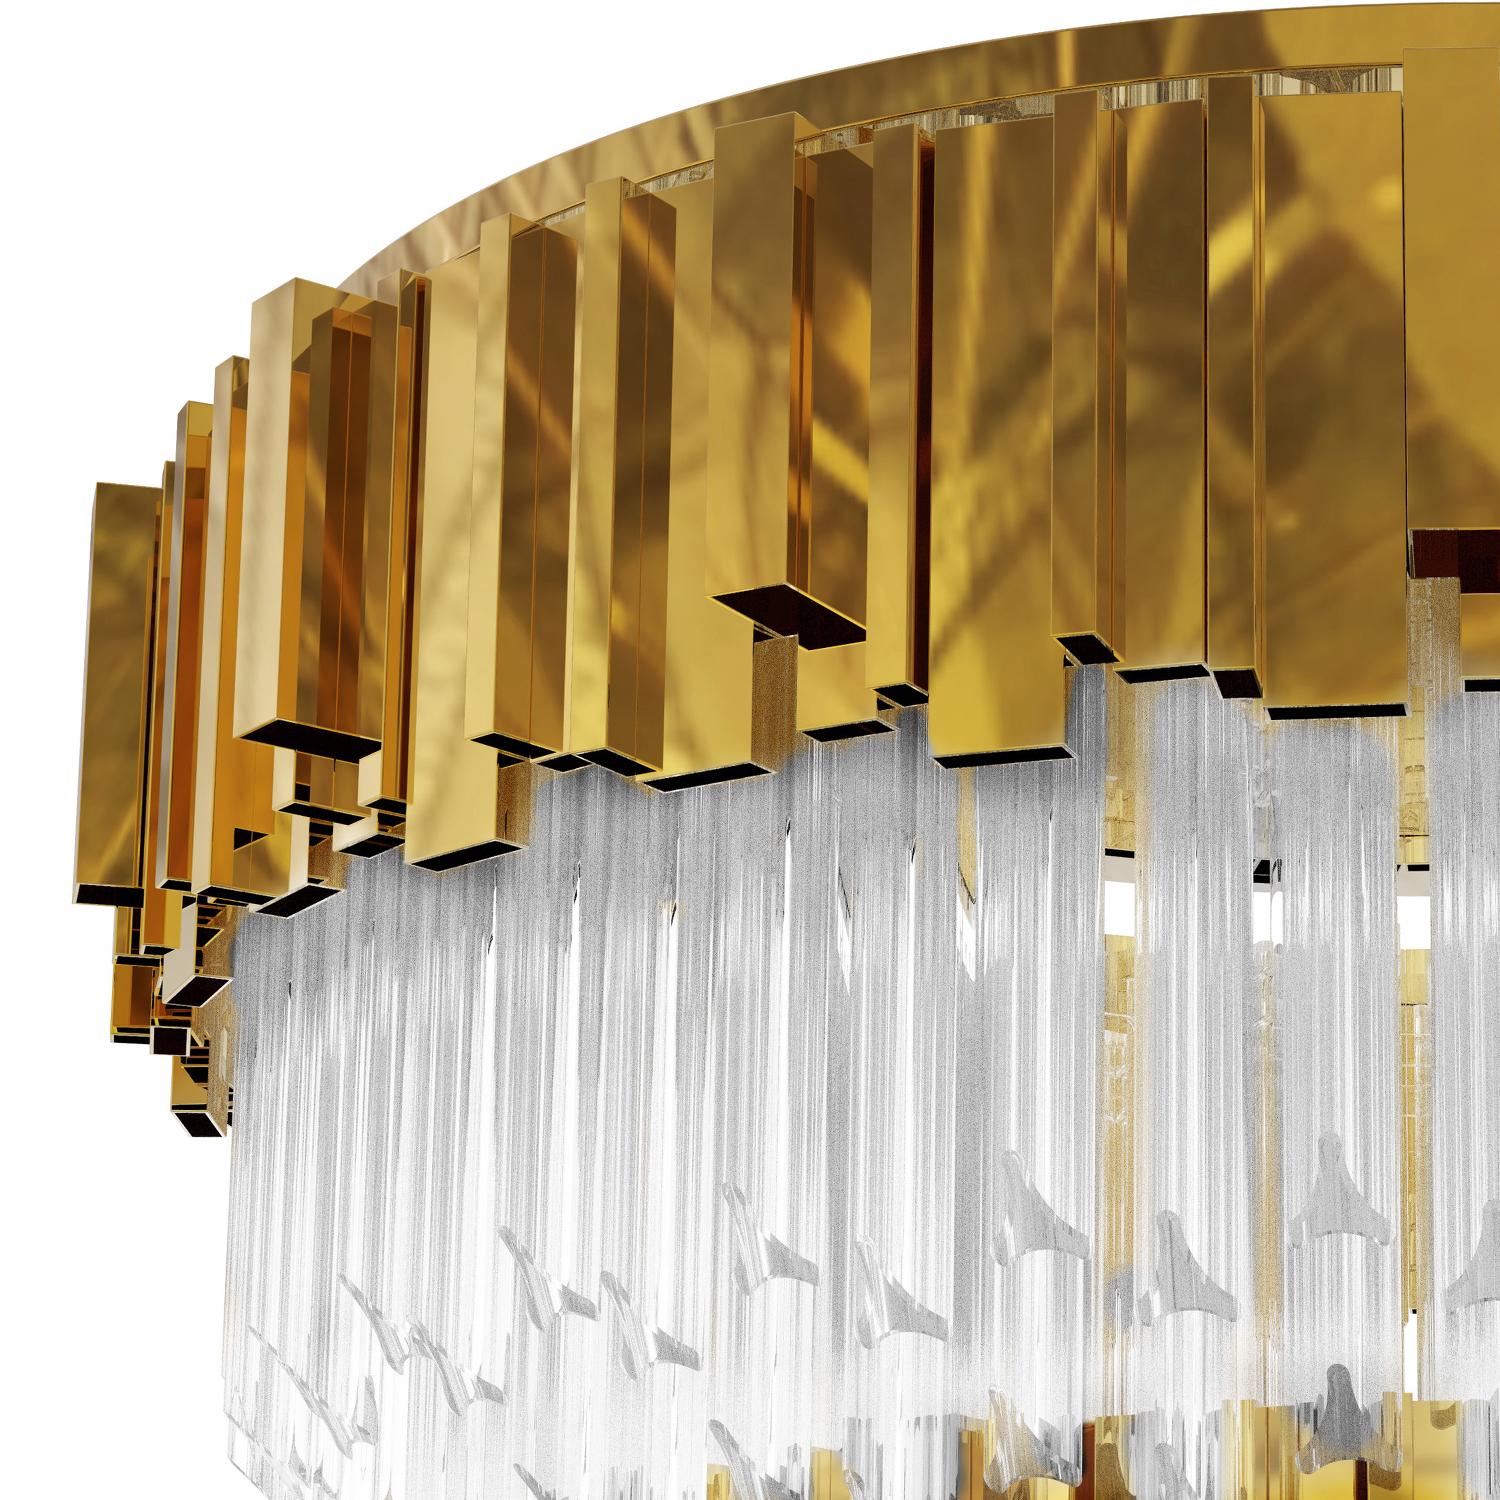 Deckenleuchte Ambassador mit Kristallglas in einer kreisförmigen Reihe 
und vergoldeten polierten Messing-Rechteckstäben in kreisförmiger Anordnung.
 Mit 8 Glühbirnen, Lampenfassung Typ G9. 40 Watt max, für 220-240V. 
Glühbirnen nicht enthalten.